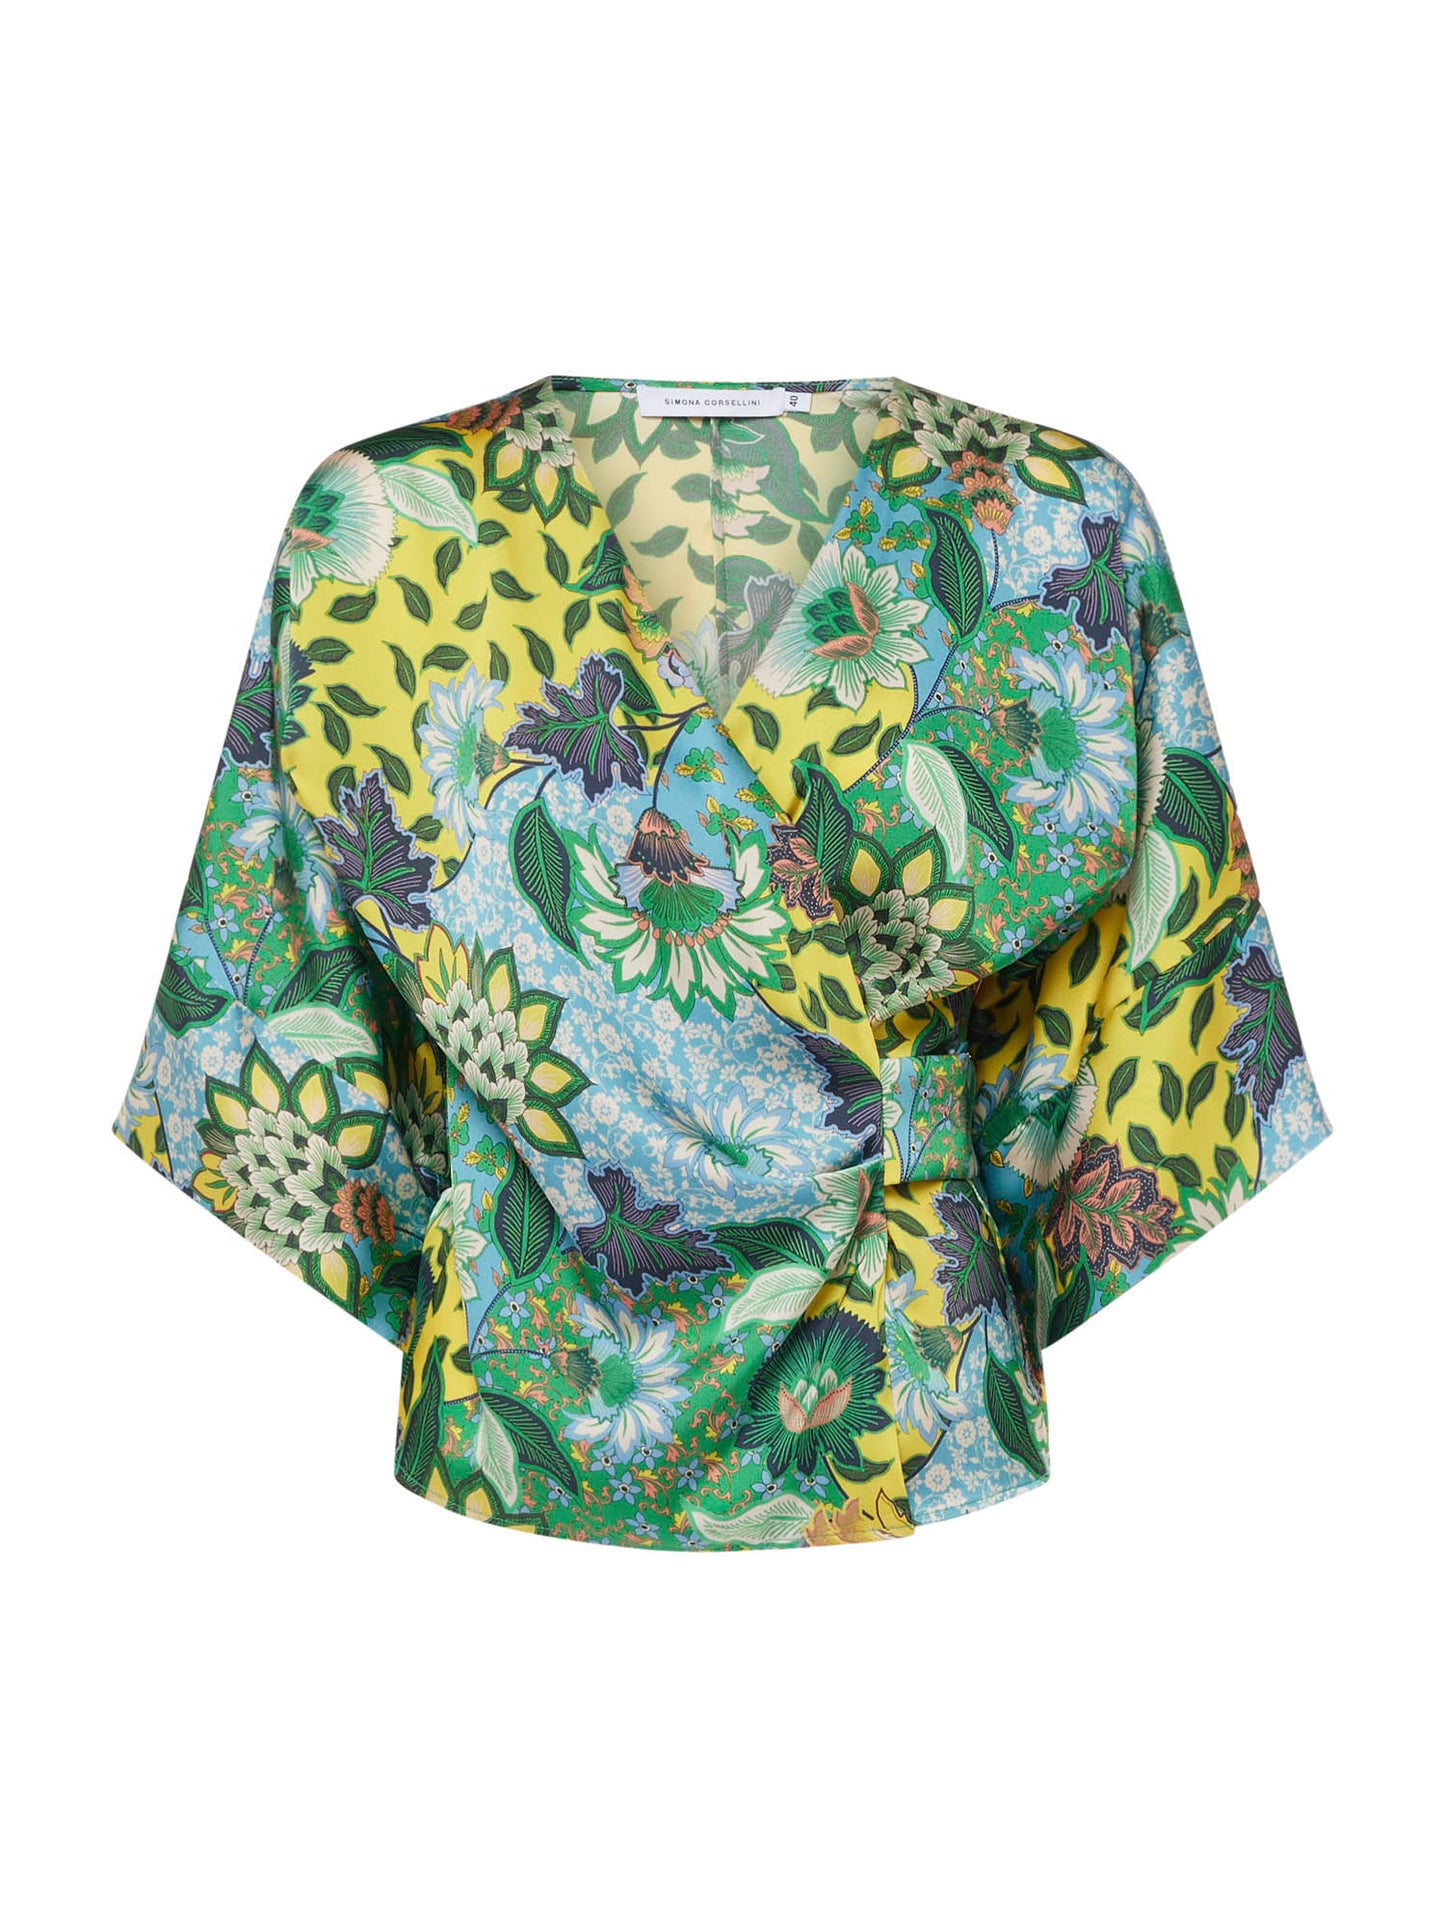 Floral kimono print blouse